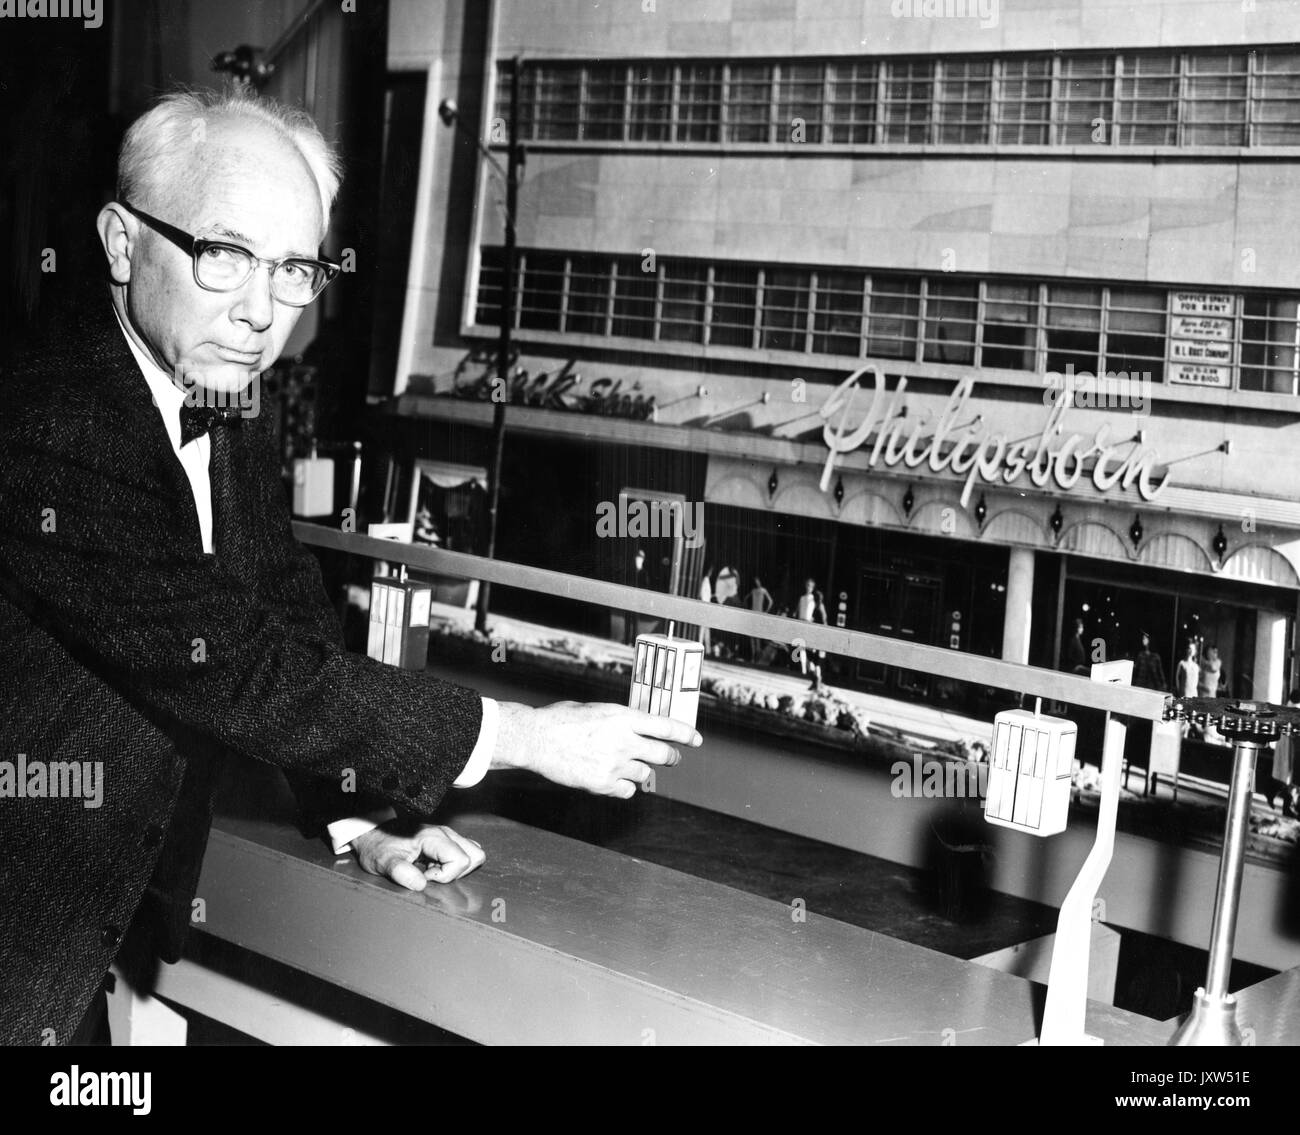 William hinkley Avery, Labor für angewandte Physik offen Foto, Sitzen, Taille, Full Face, Antenne Auto Transport System, c mit 70 Jahren, 1960. Stockfoto